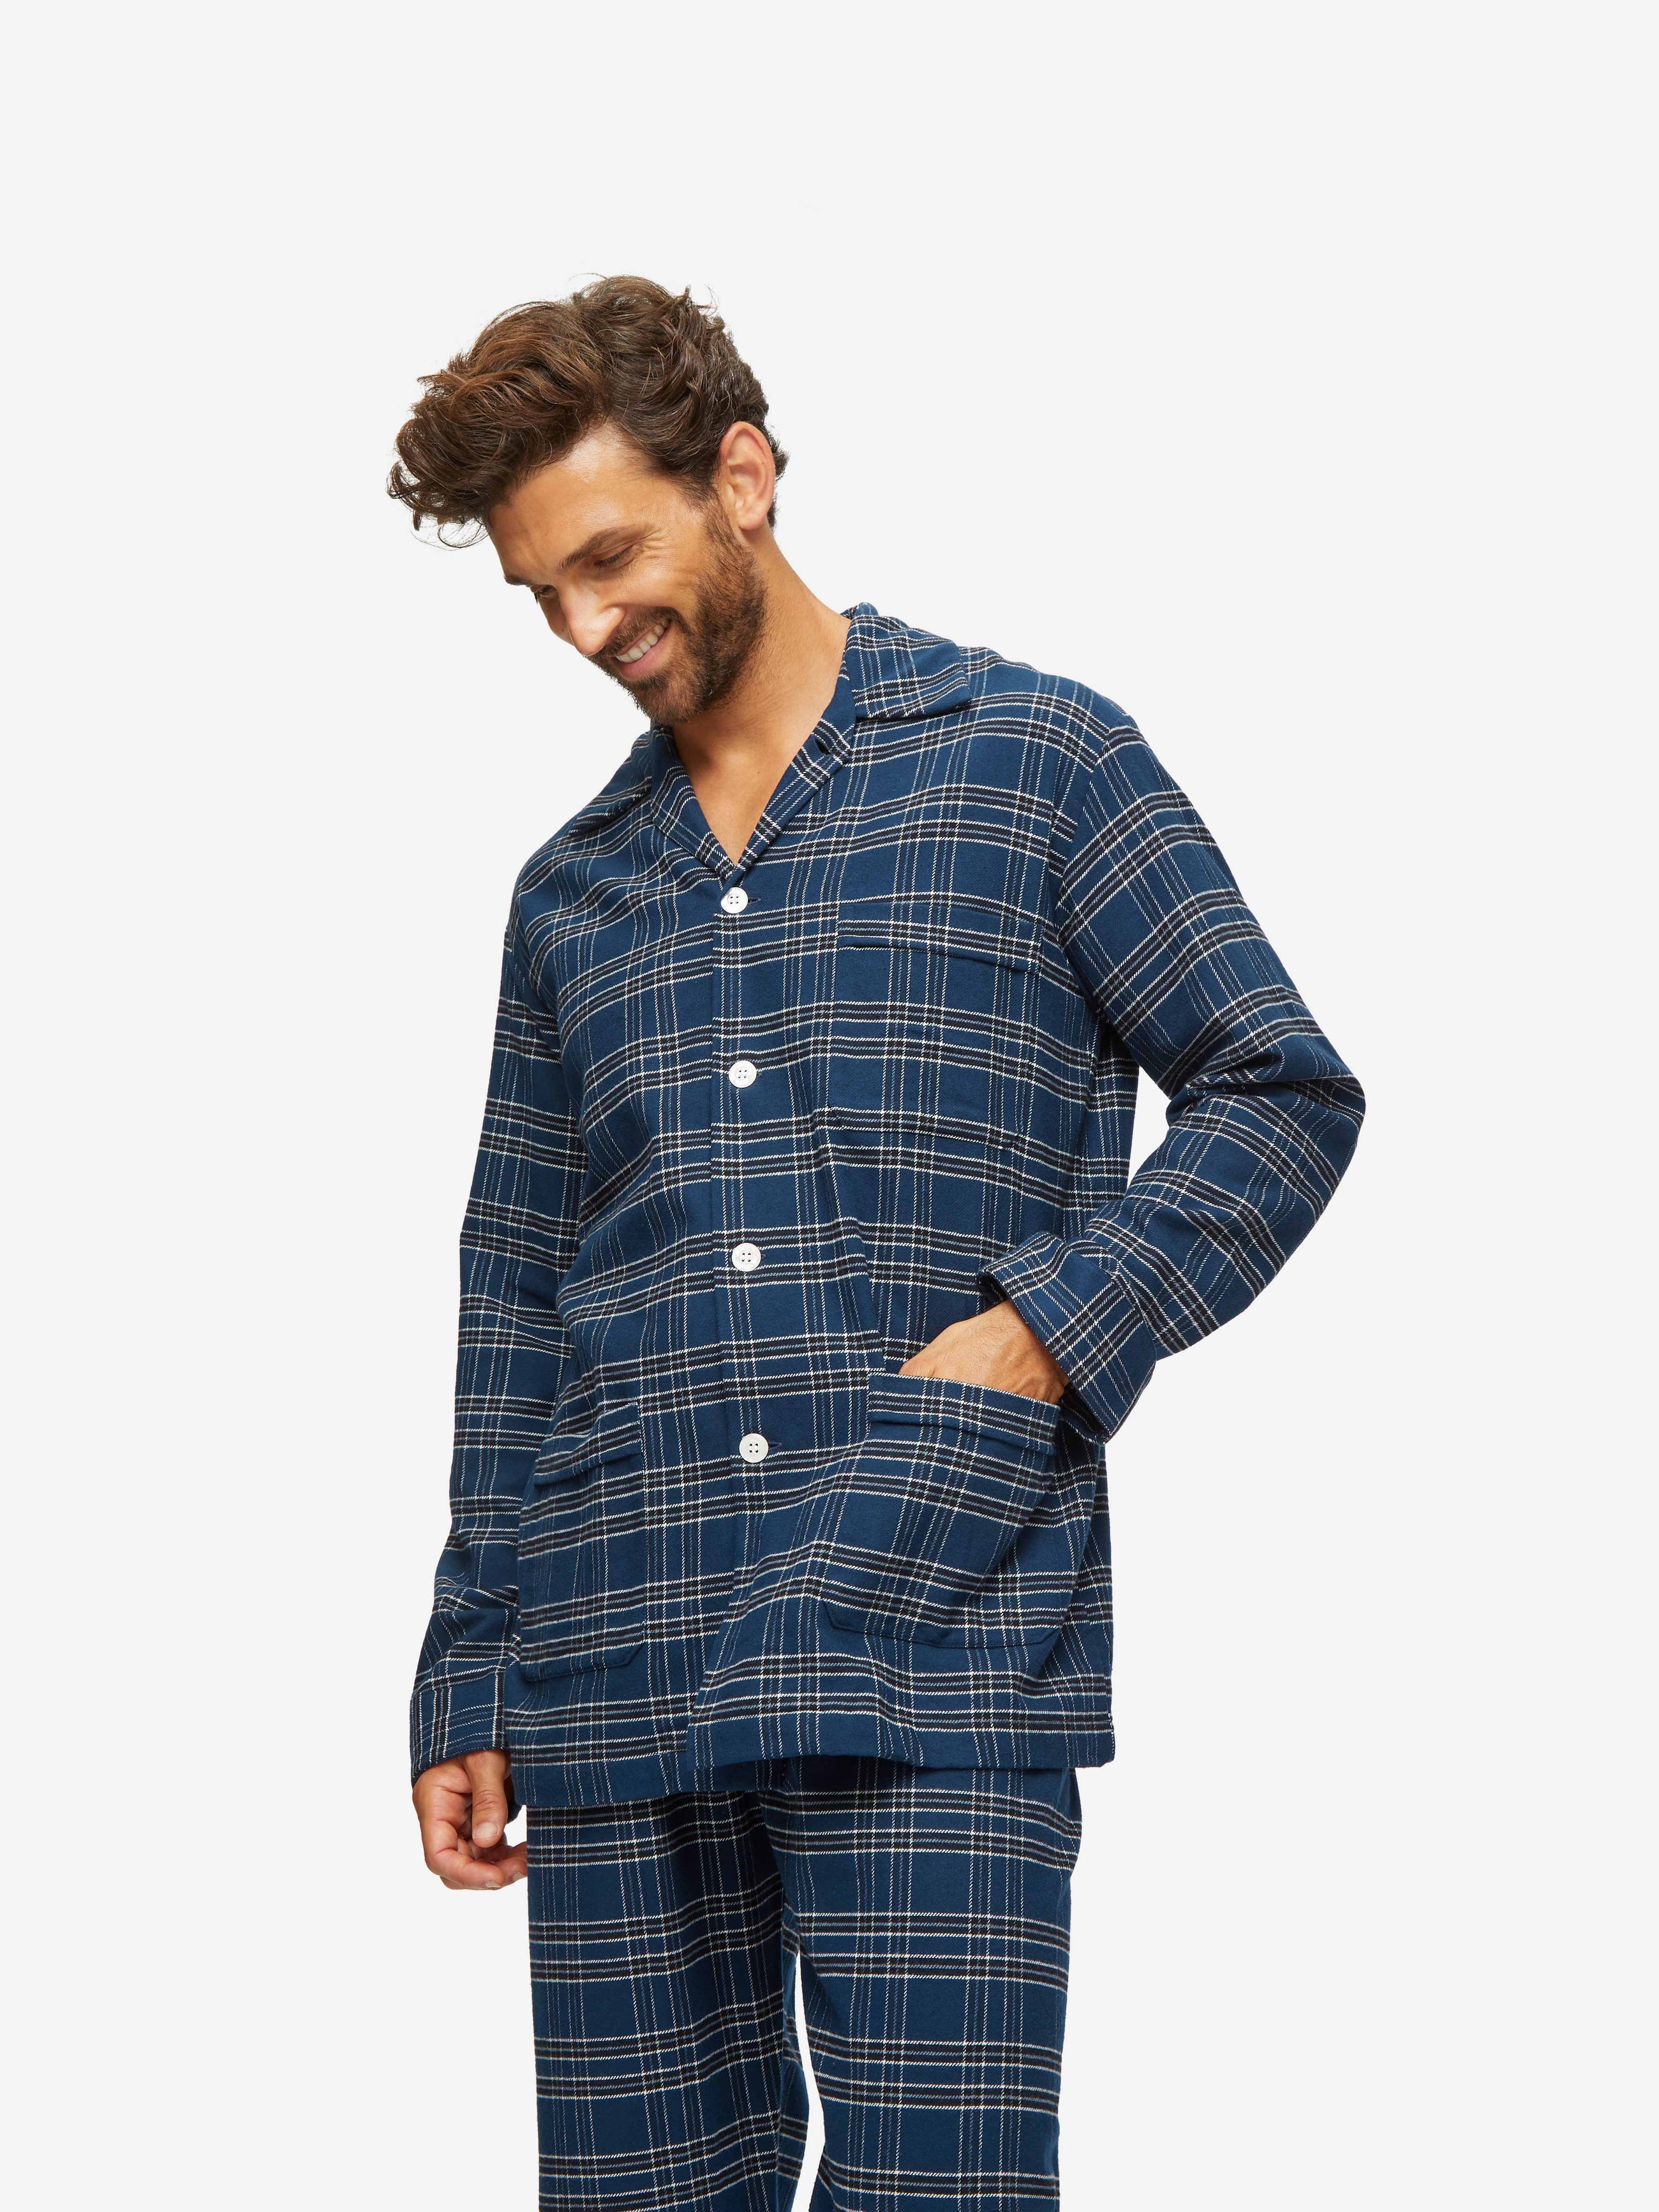 Suitjamas, Luxury men's pajamas